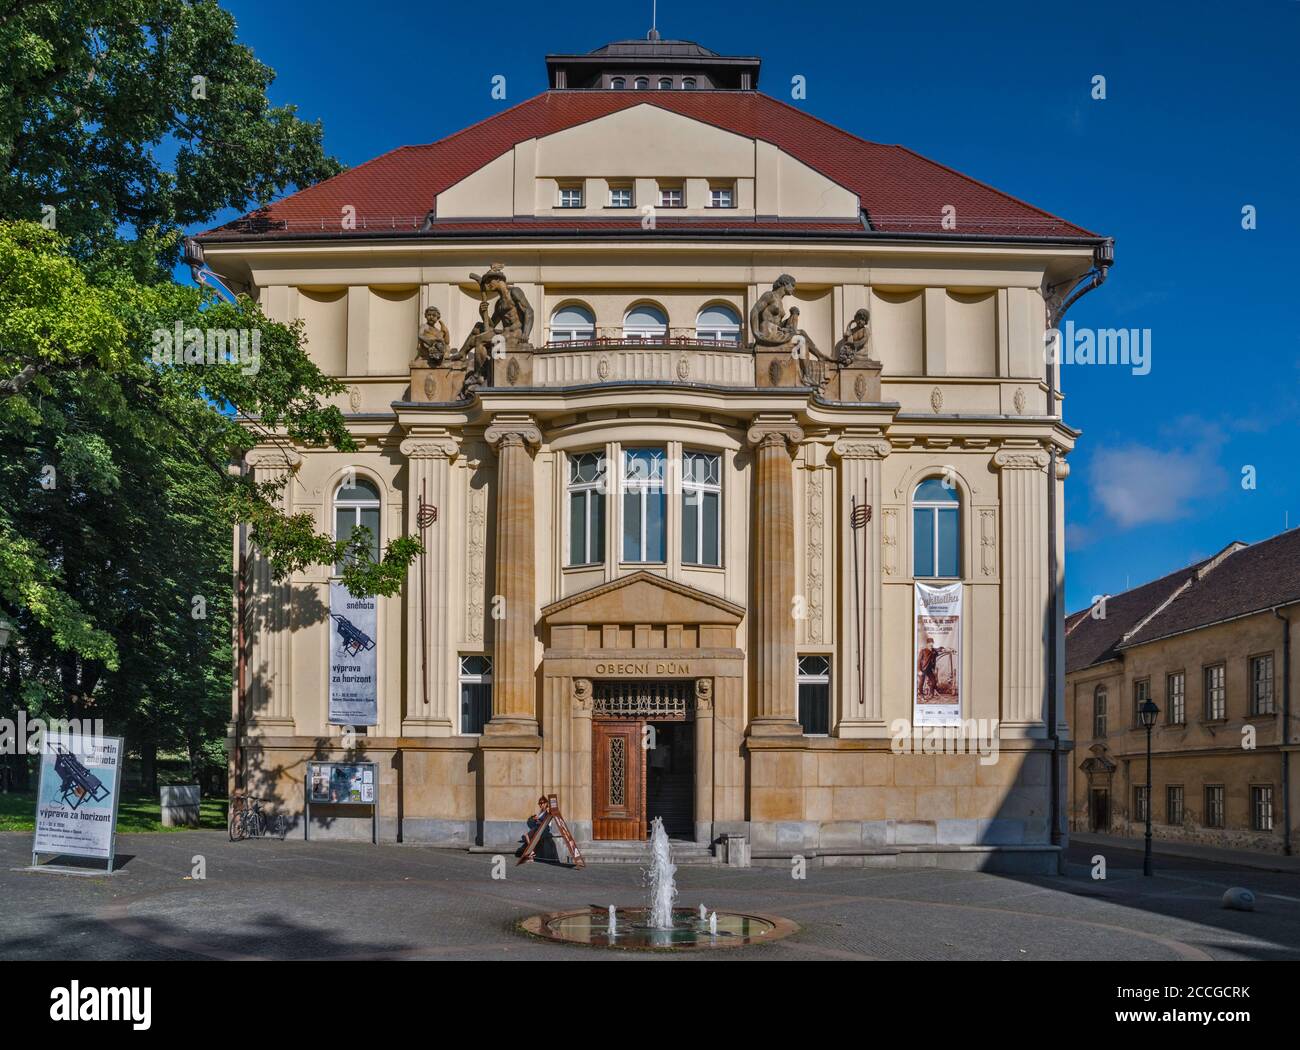 Obecni dum (Gemeindehaus), Ausstellungszentrum in Opava, Mährisch-Schlesische Region, Schlesien, Tschechische Republik Stockfoto